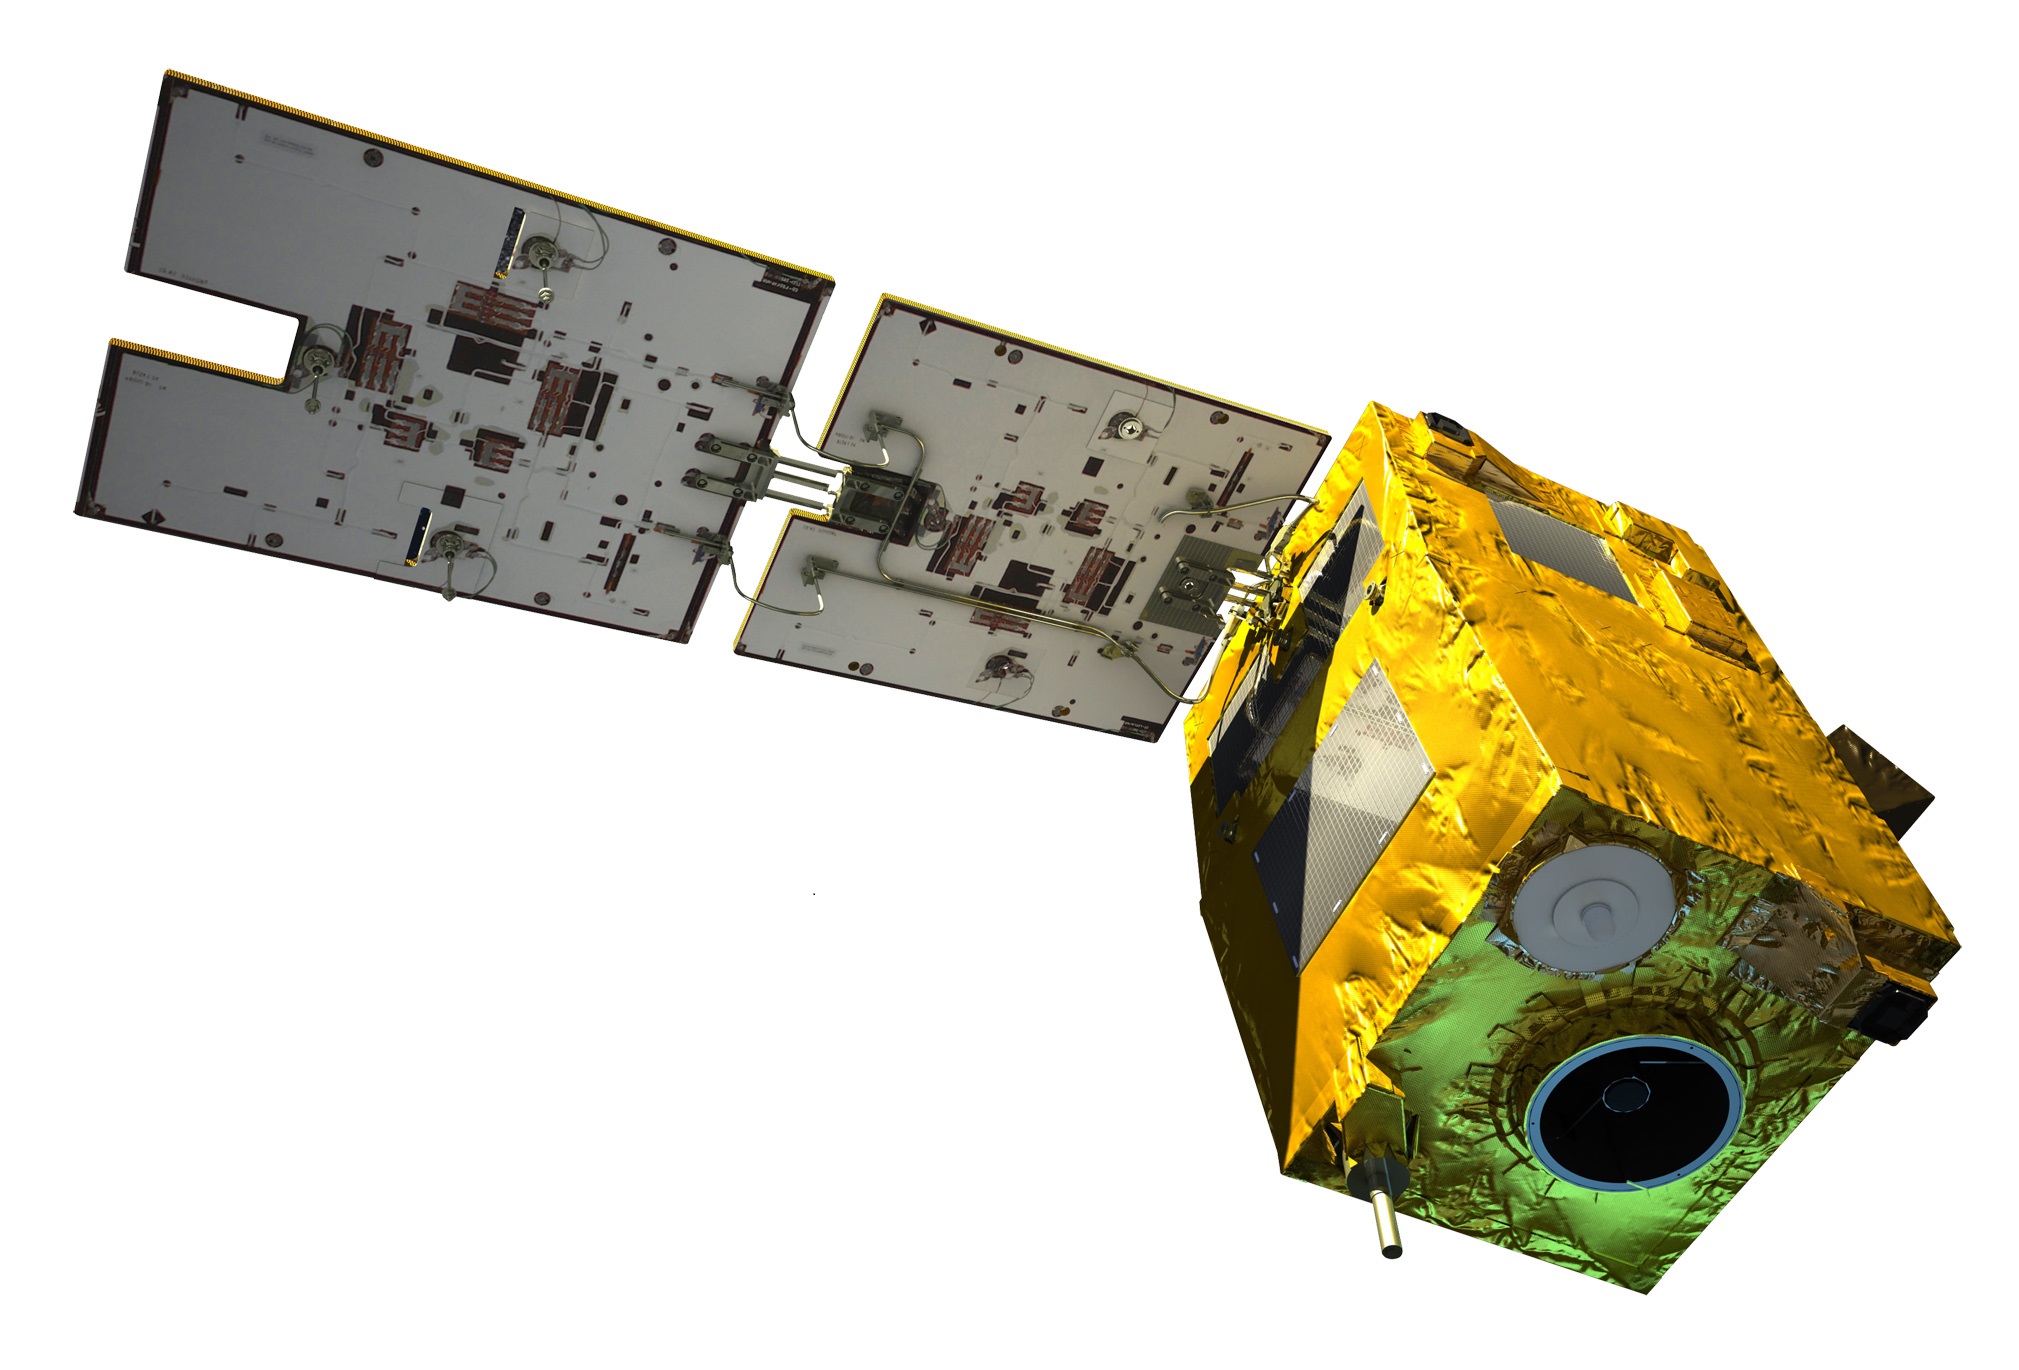 Le satellite algérien Alsat-2B sur les traces de son jumeau Alsat-2A : déjà 05 ans en orbite